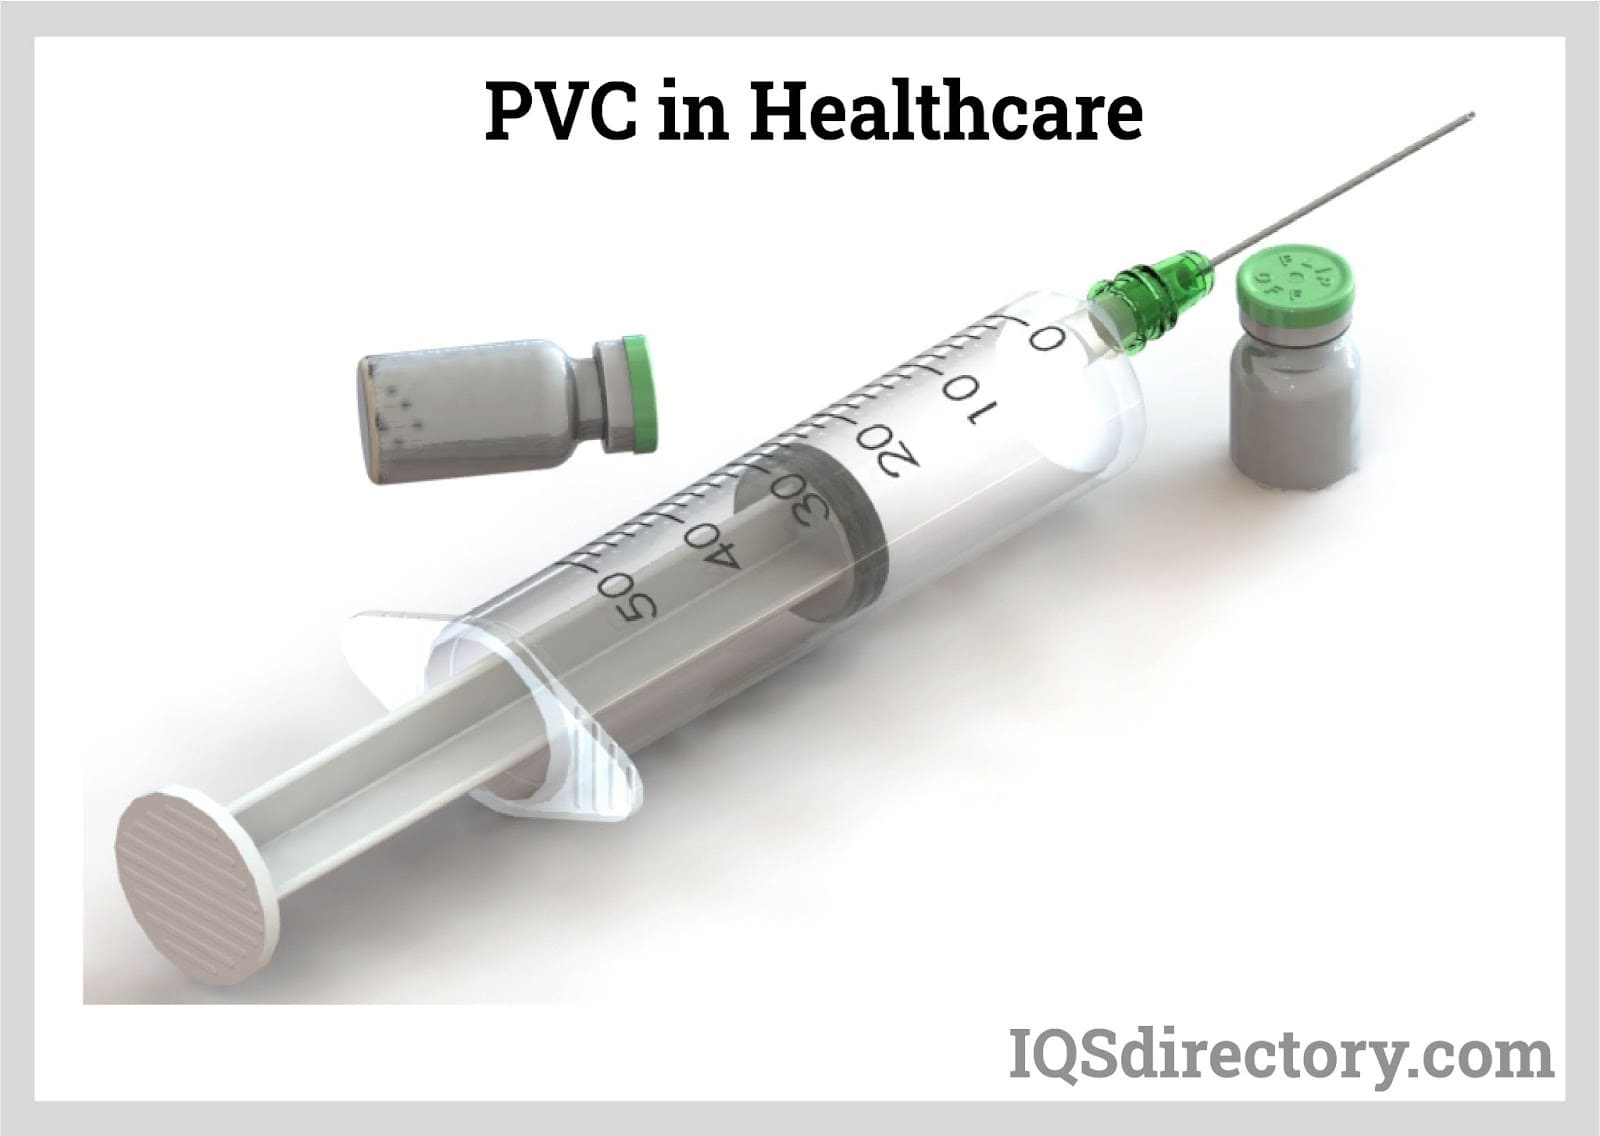  PVC in Healthcare